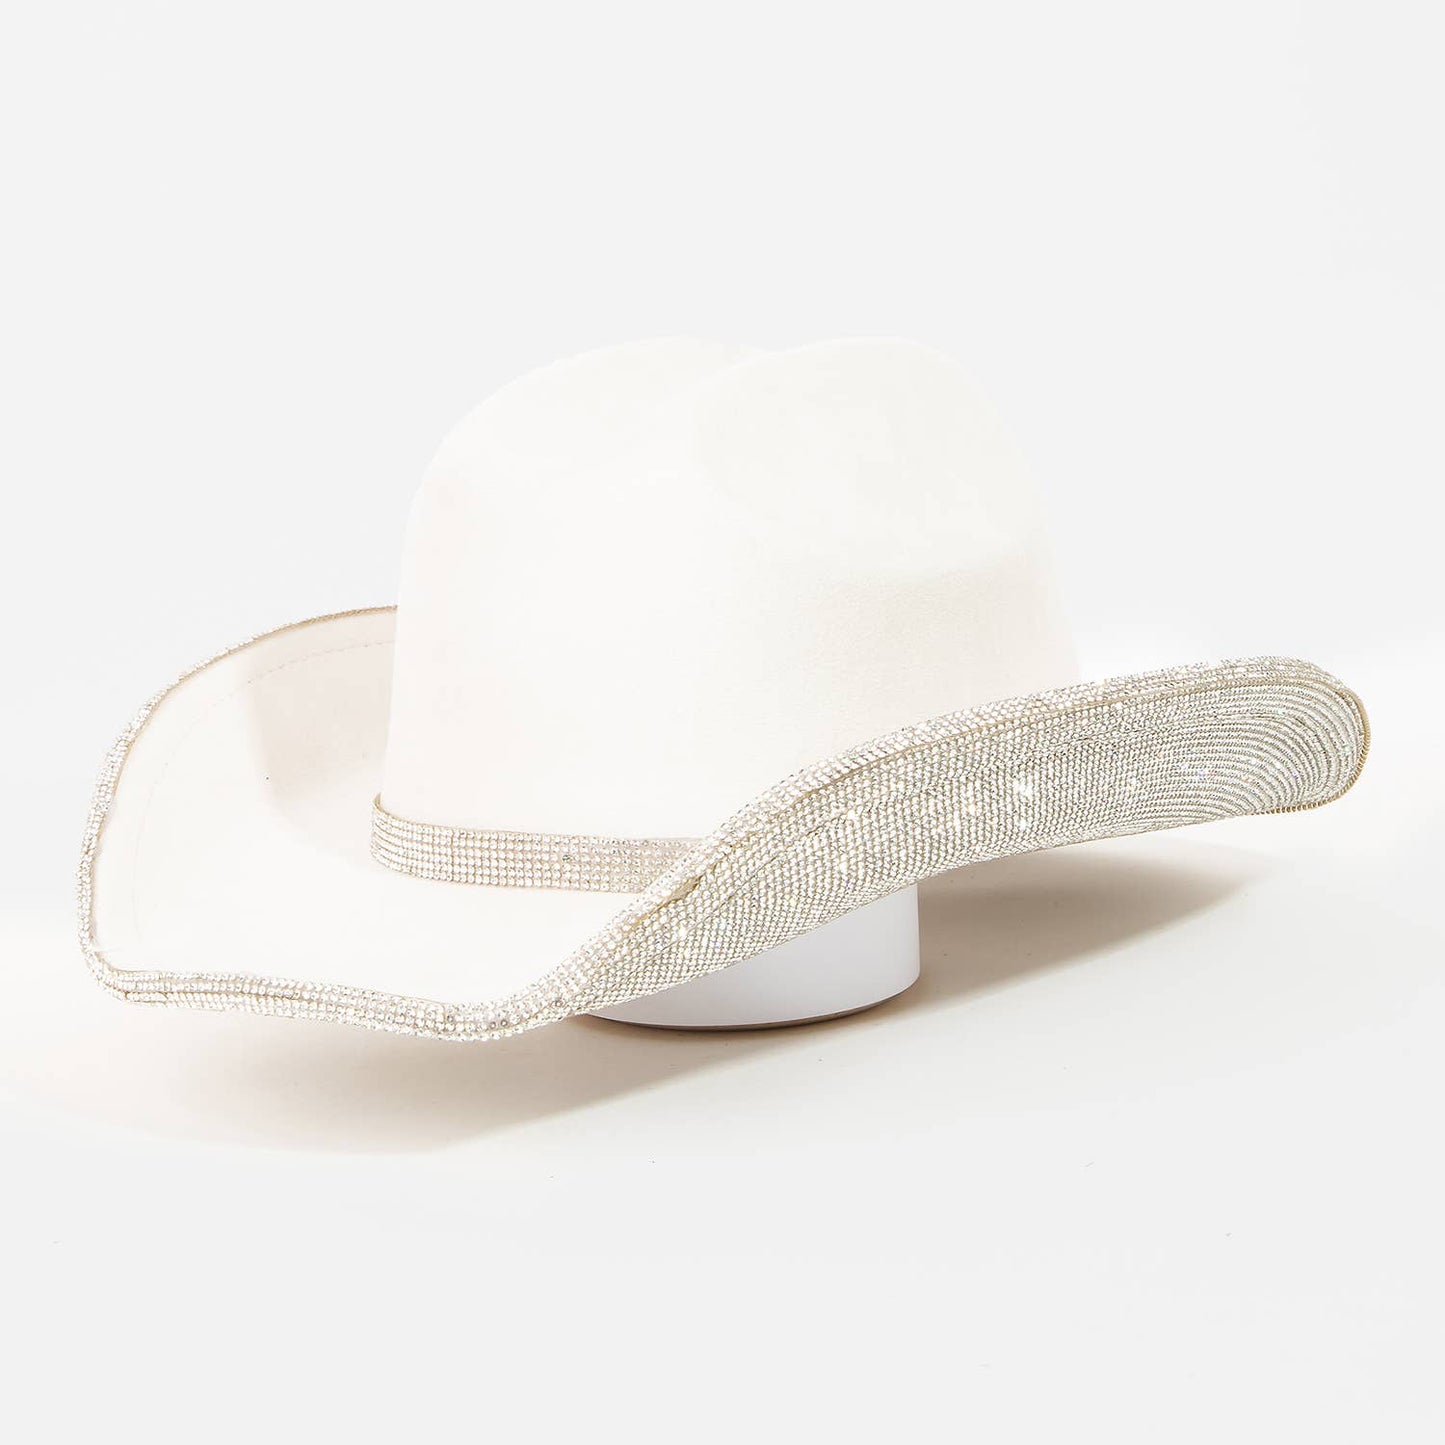 Pink Rhinestone Trim Cowboy Hat